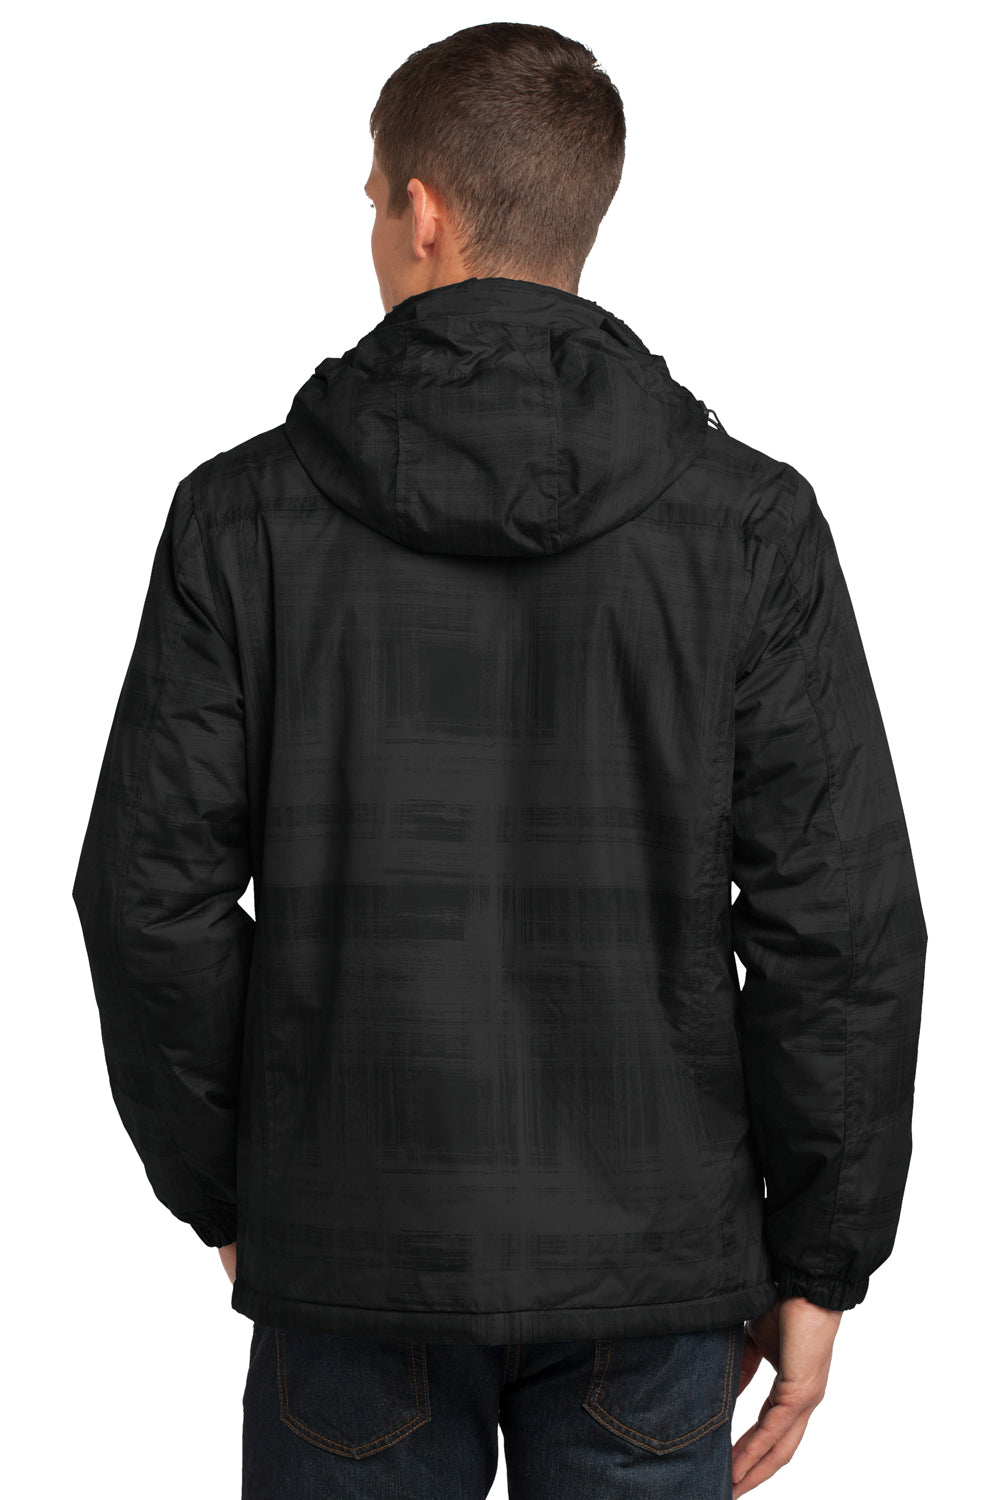 Port Authority J320 Mens Brushstroke Wind & Water Resistant Full Zip Hooded Jacket Black Brushstroke Back